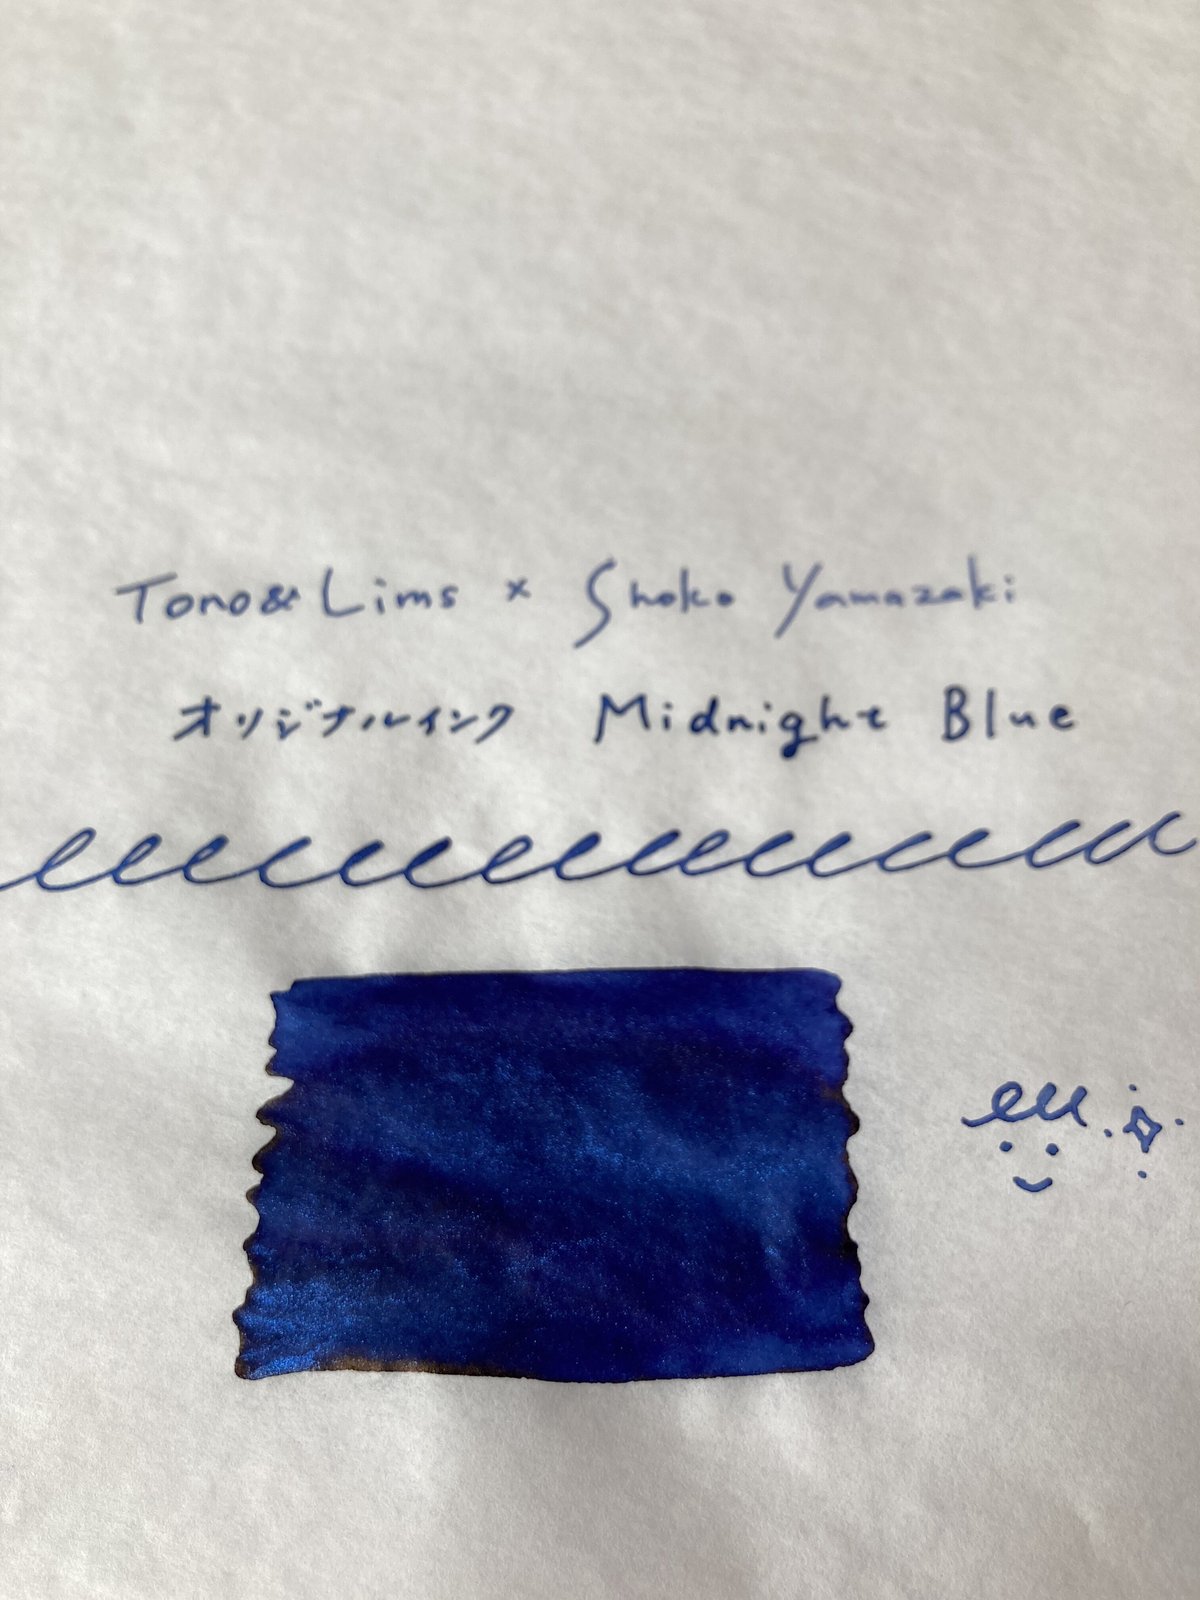 Tono＆Lims × Shoko Yamazaki オリジナルインク Midnight B